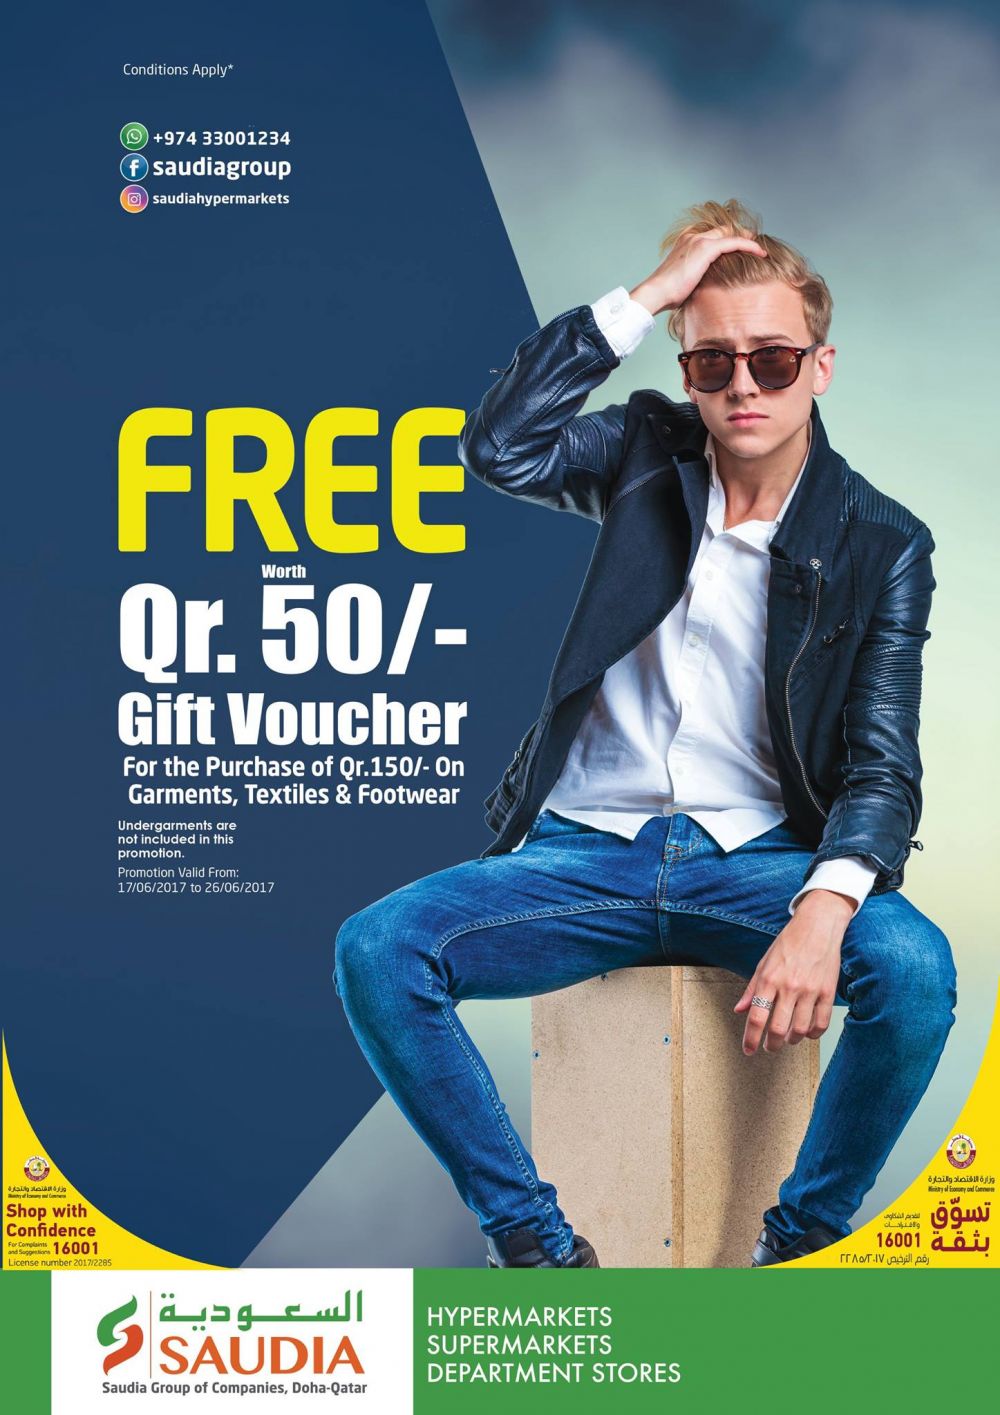 FREE Worth QR.50/- Gift Voucher